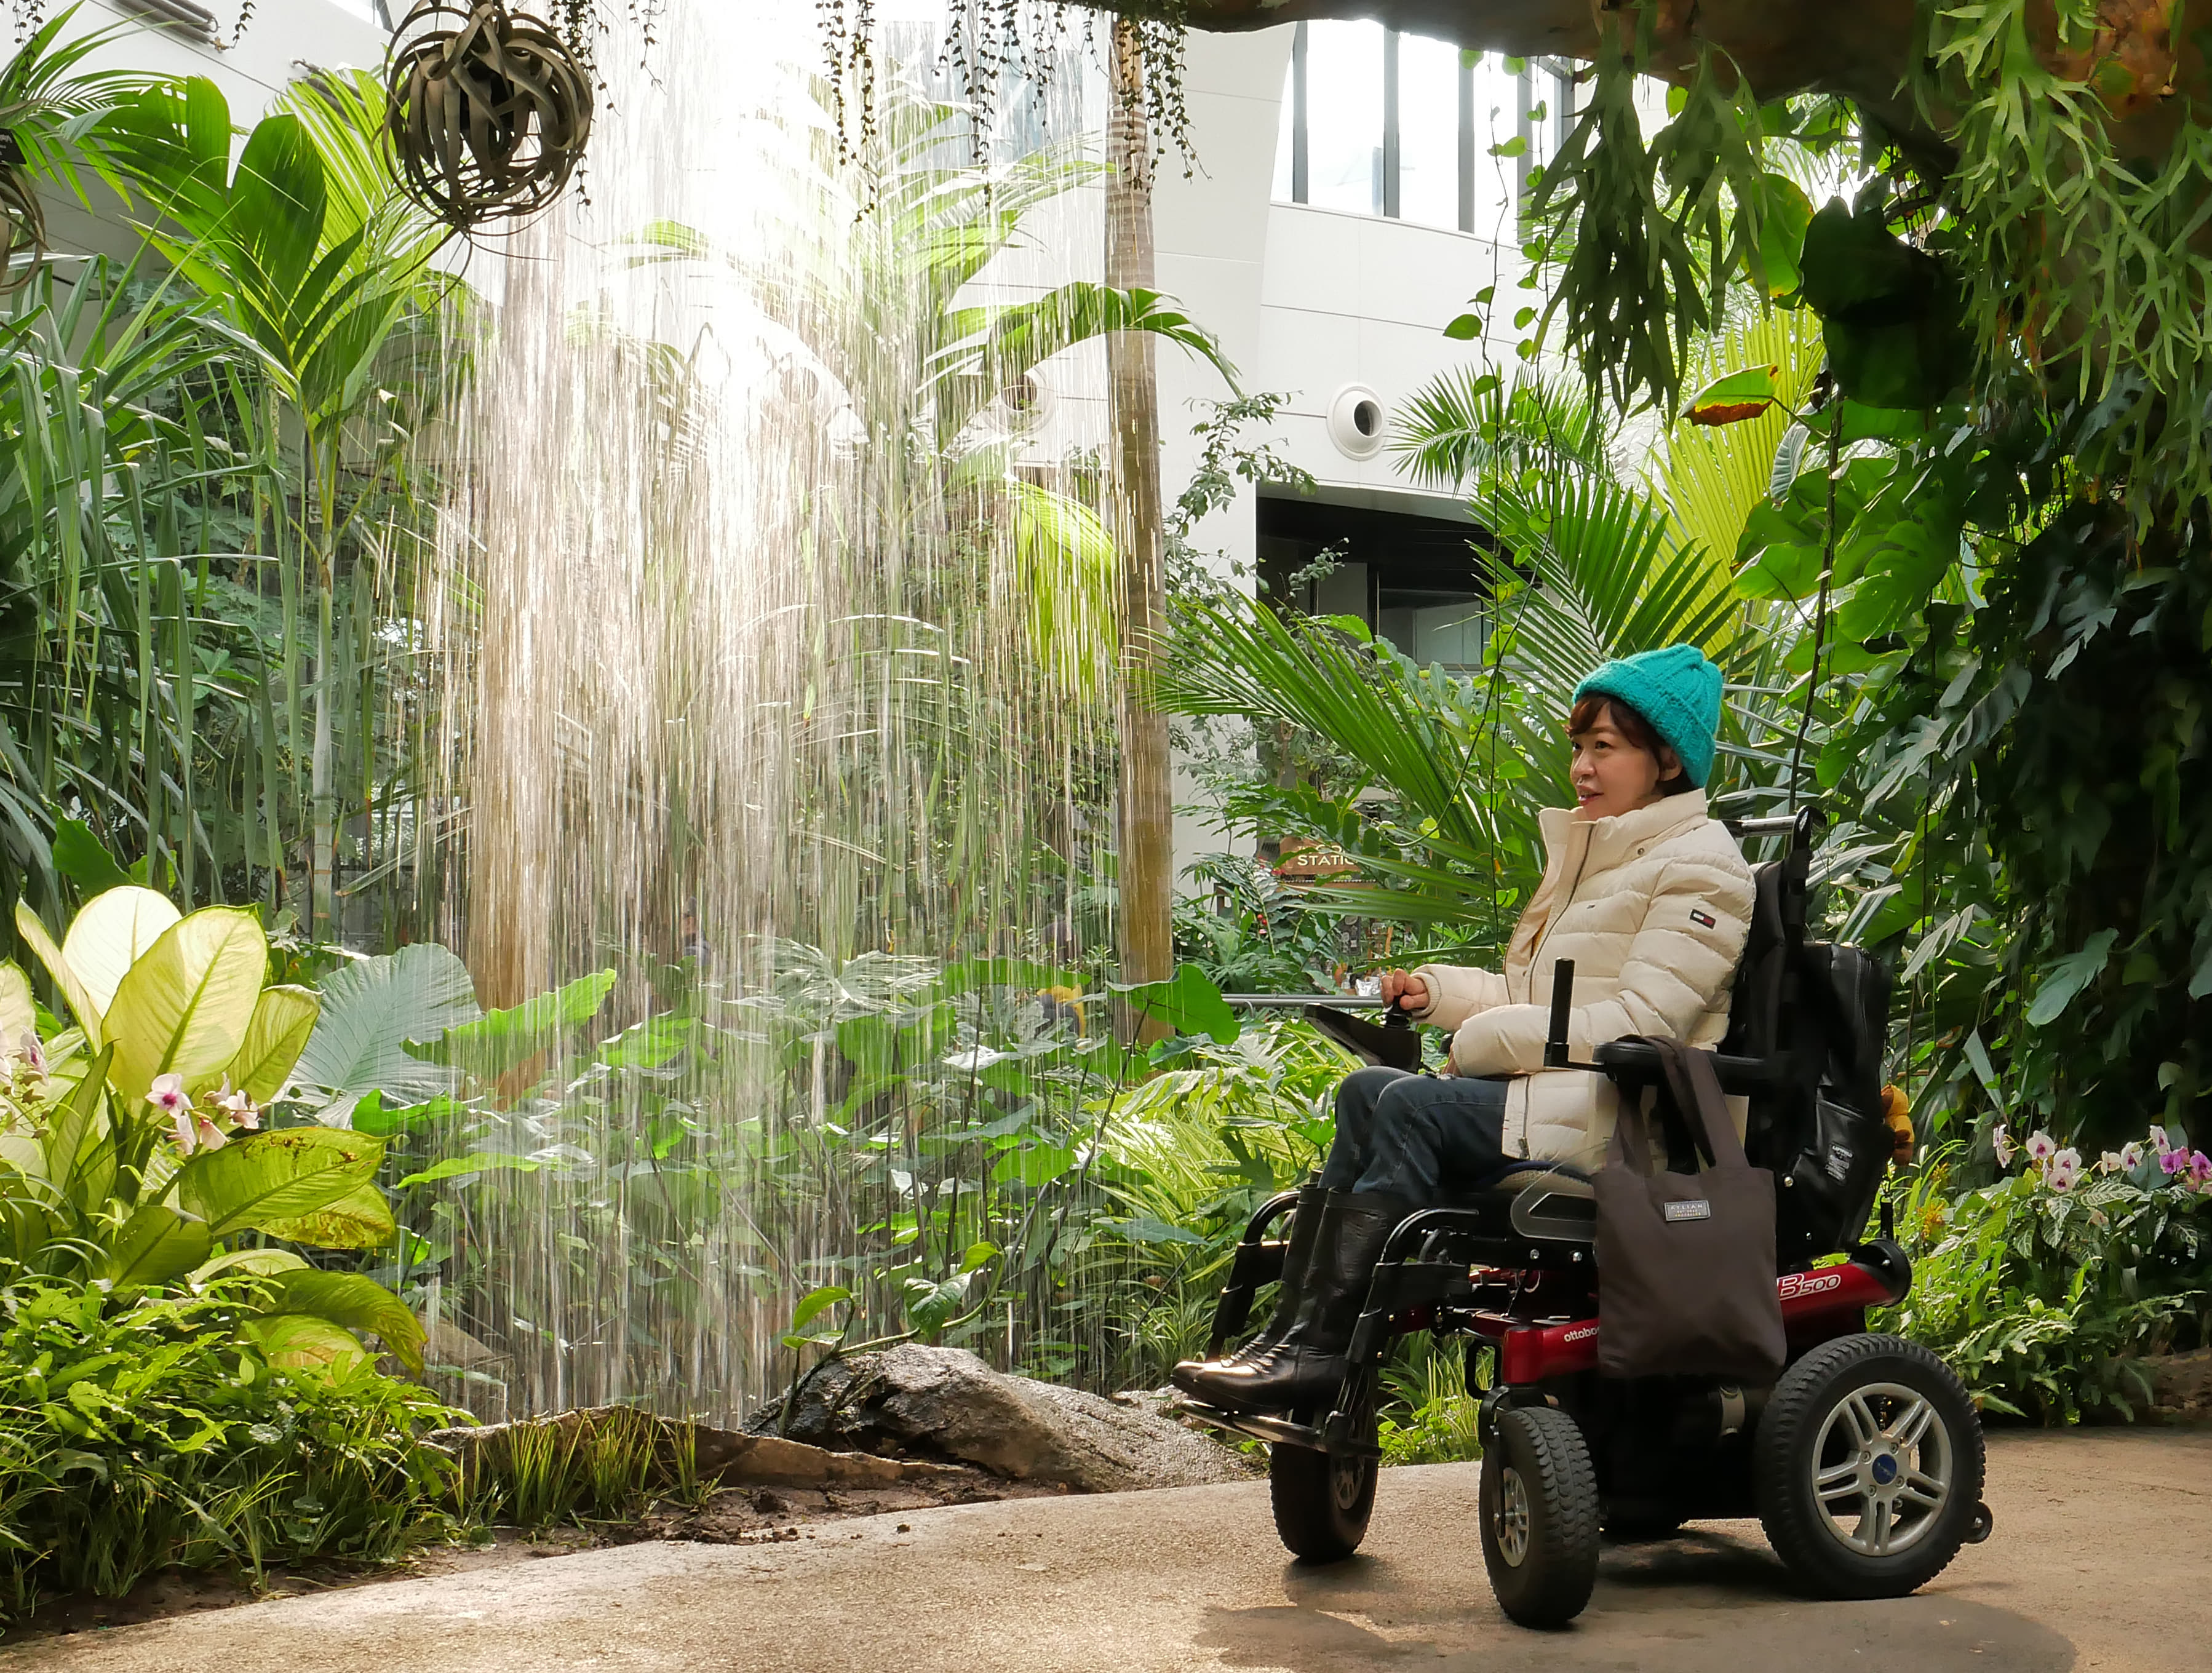 서울식물원2 : 휠체어로 관람 가능한 서울식물원 내부 전경